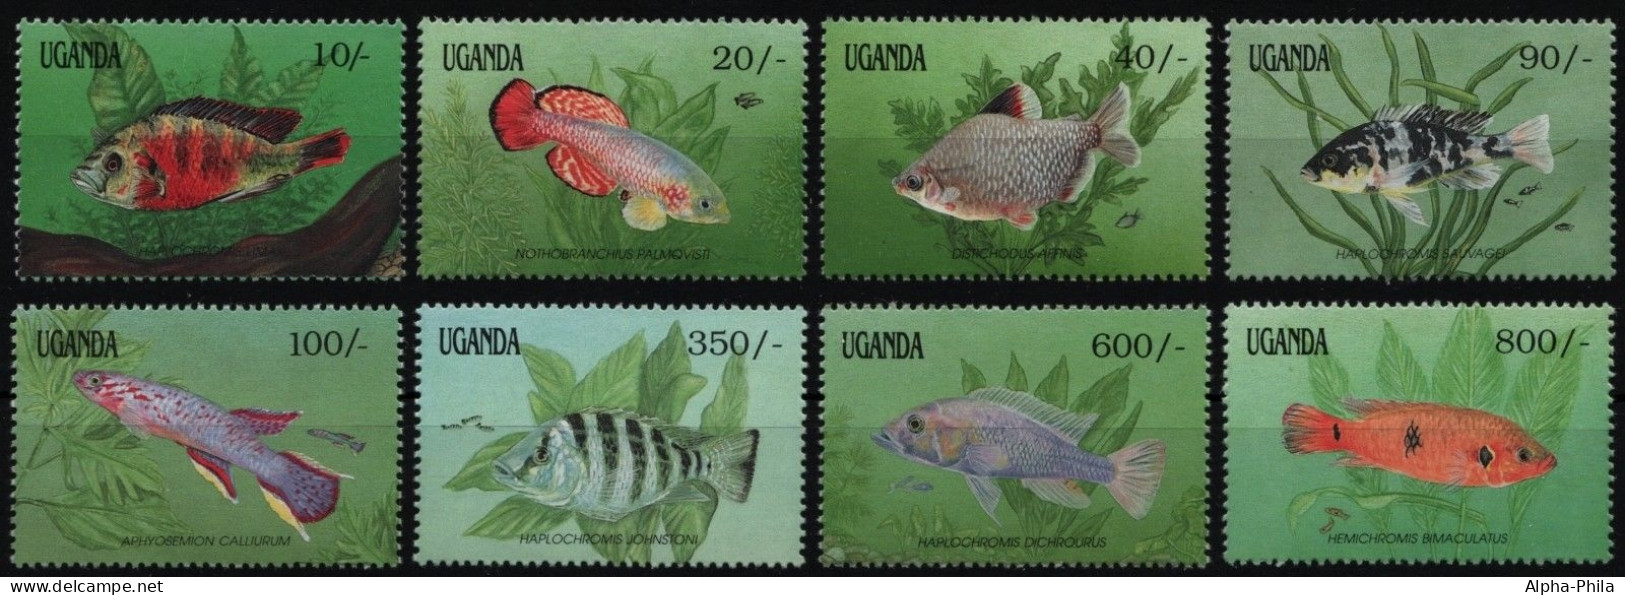 Uganda 1991 - Mi-Nr. 873-880 ** - MNH - Fische / Fish - Uganda (1962-...)